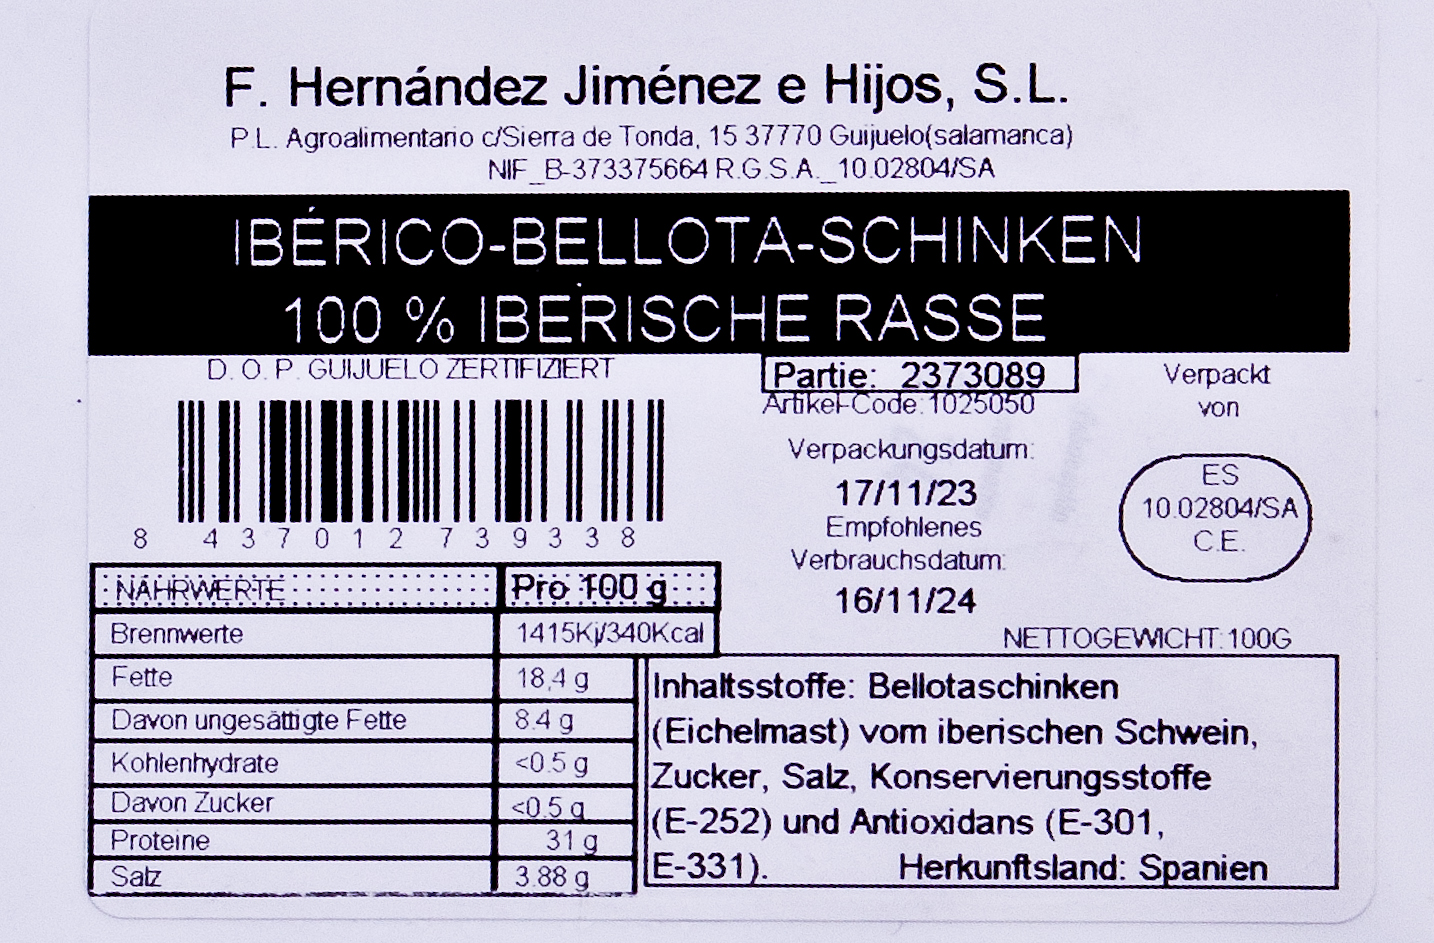 Pata Negra Jamon de Bellota 100% Iberico g.U. per Hand geschnitten, Eichelfütterung, von freilaufenden Schweinen, Hinterschinken